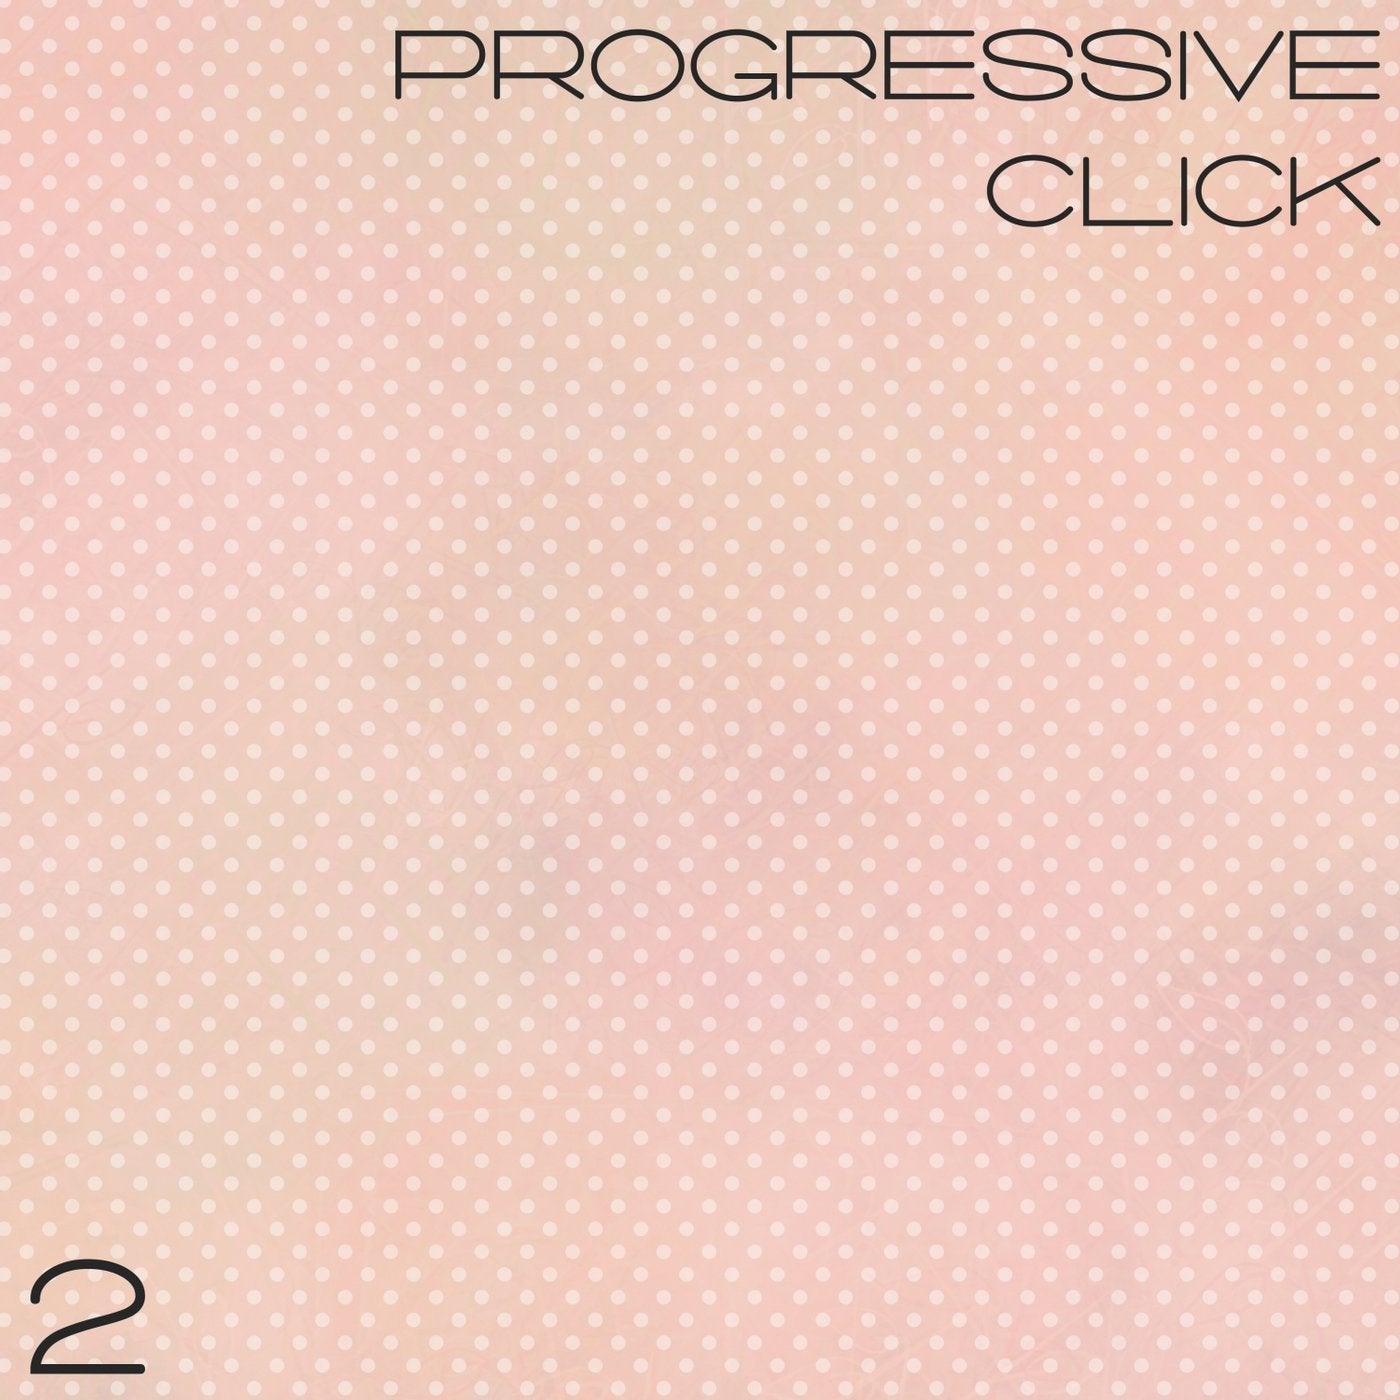 Progressive Click, Vol. 2